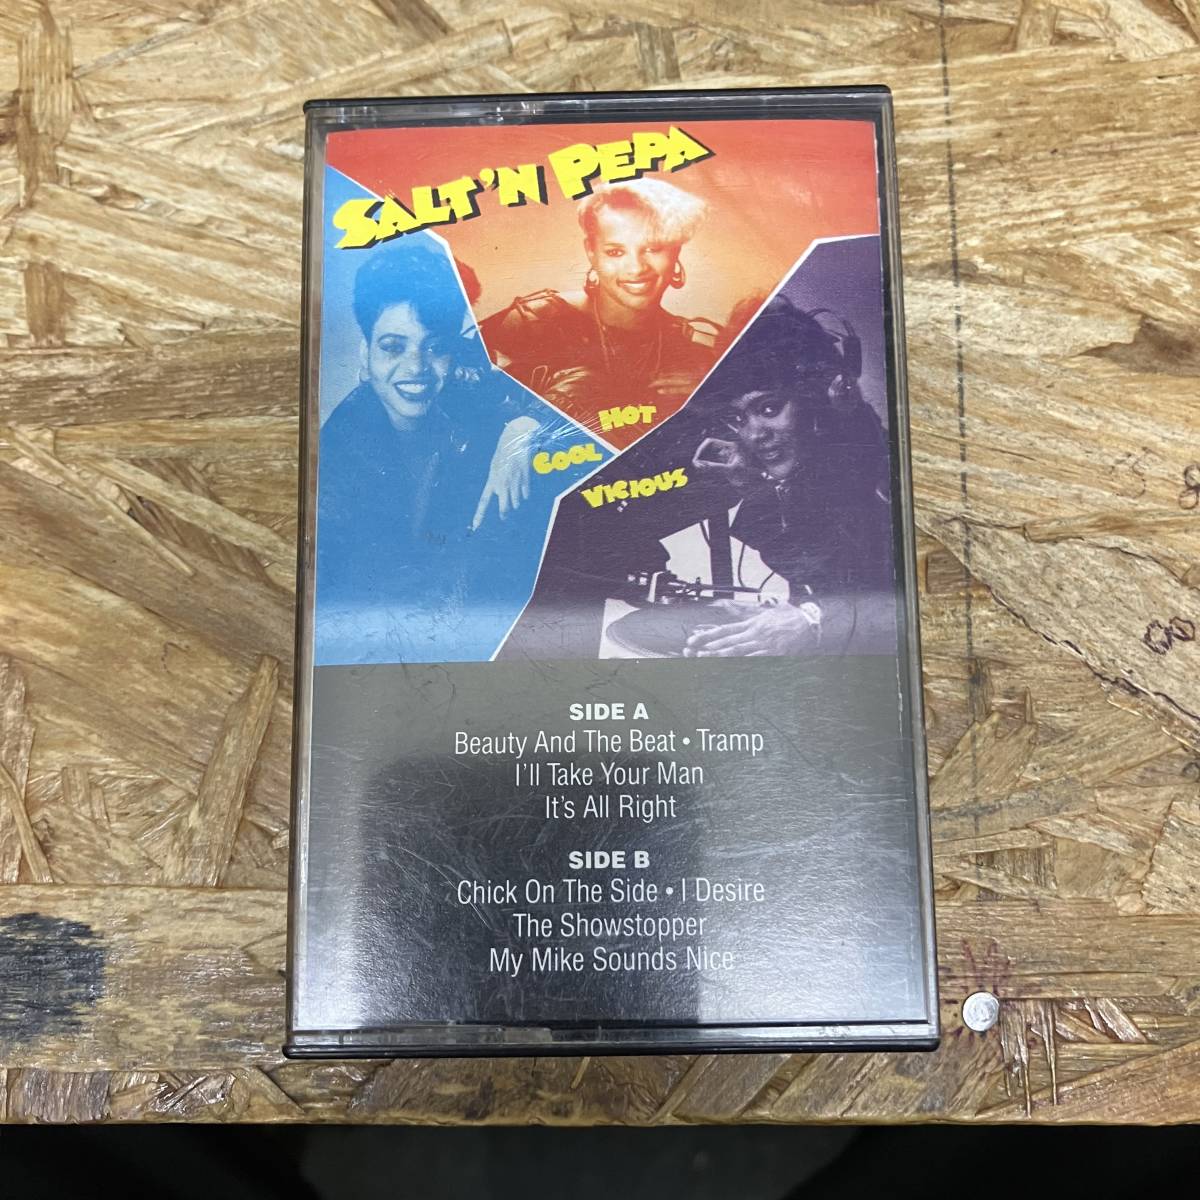 シHIPHOP,R&B SALT 'N PEPA - HOT, COOL & VICIOUS アルバム,名作! TAPE 中古品_画像1